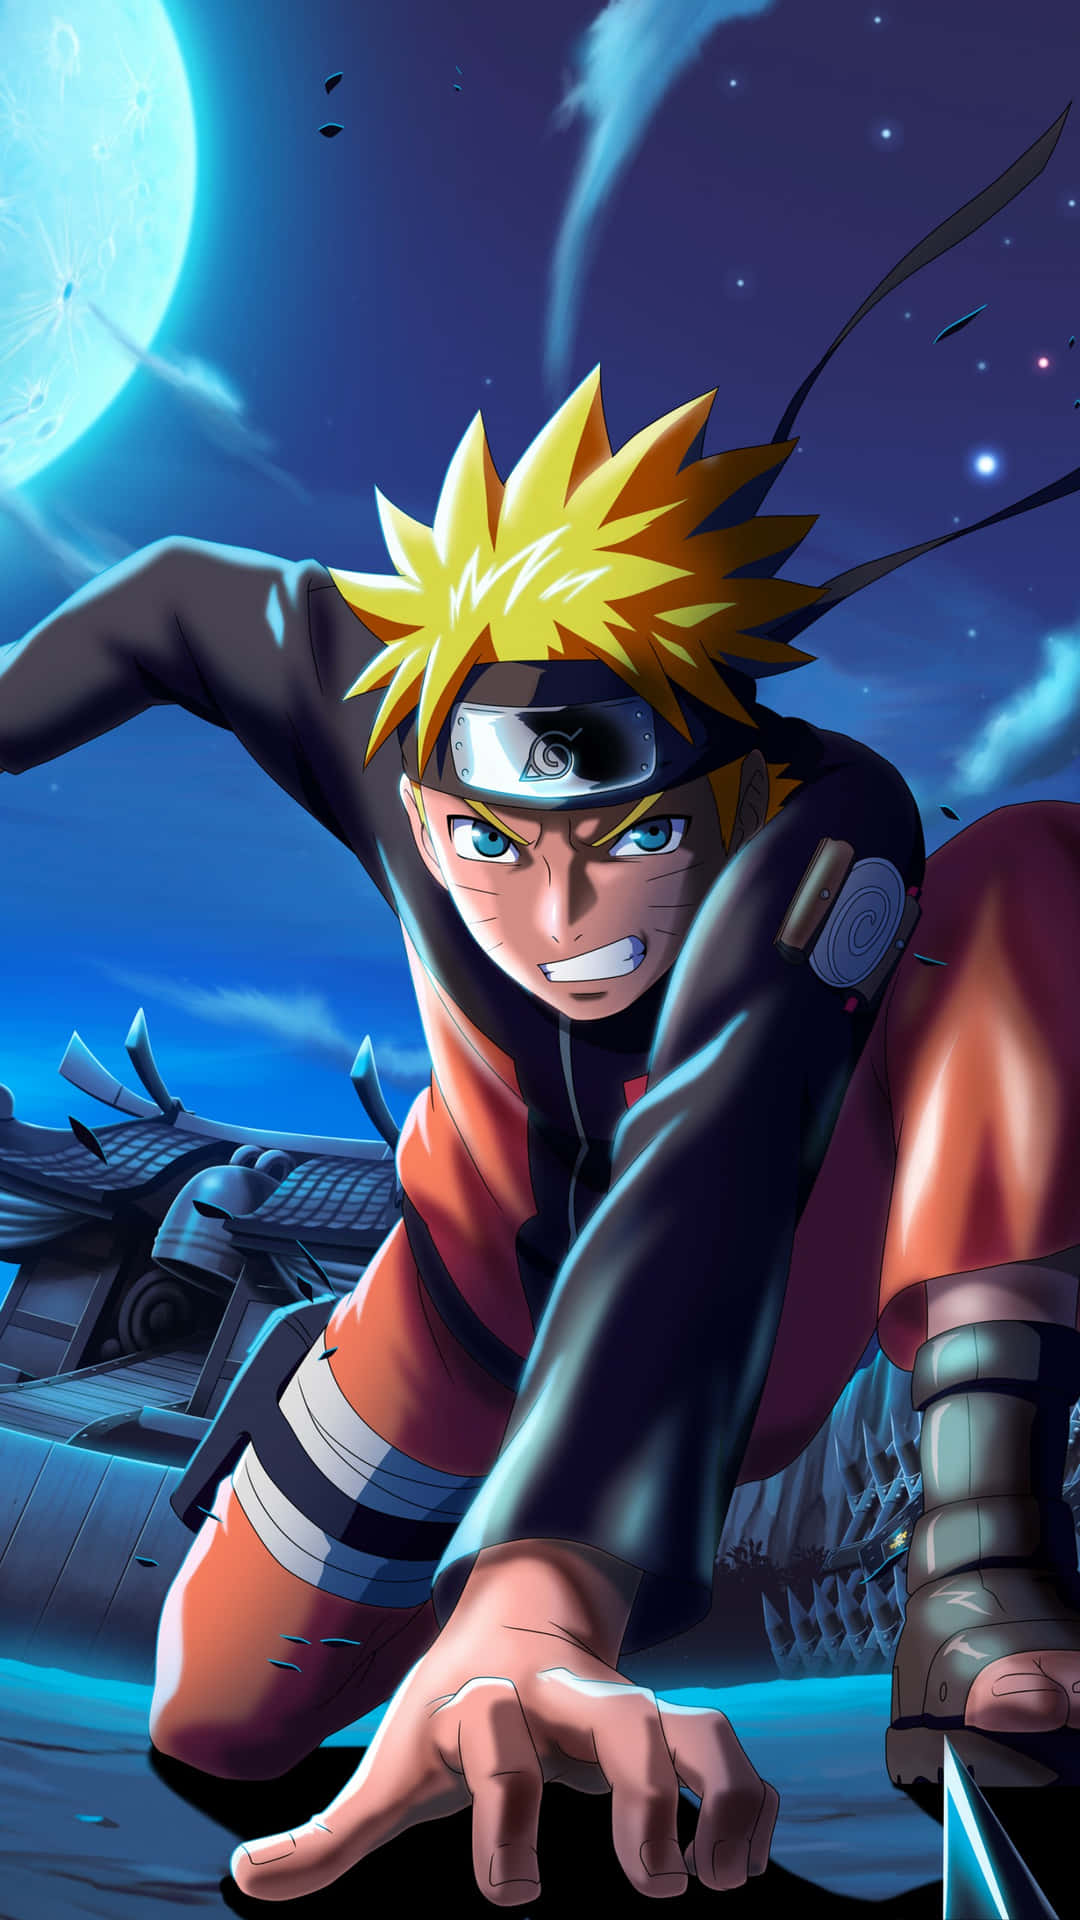 Naruto Uzumaki - nhân vật chính của bộ truyện Naruto, được ví như biểu tượng sức mạnh và sự bất khuất. Hãy để bức ảnh liên quan đến Naruto Uzumaki cho bạn thấy cảm giác mạnh mẽ và quyết đoán!